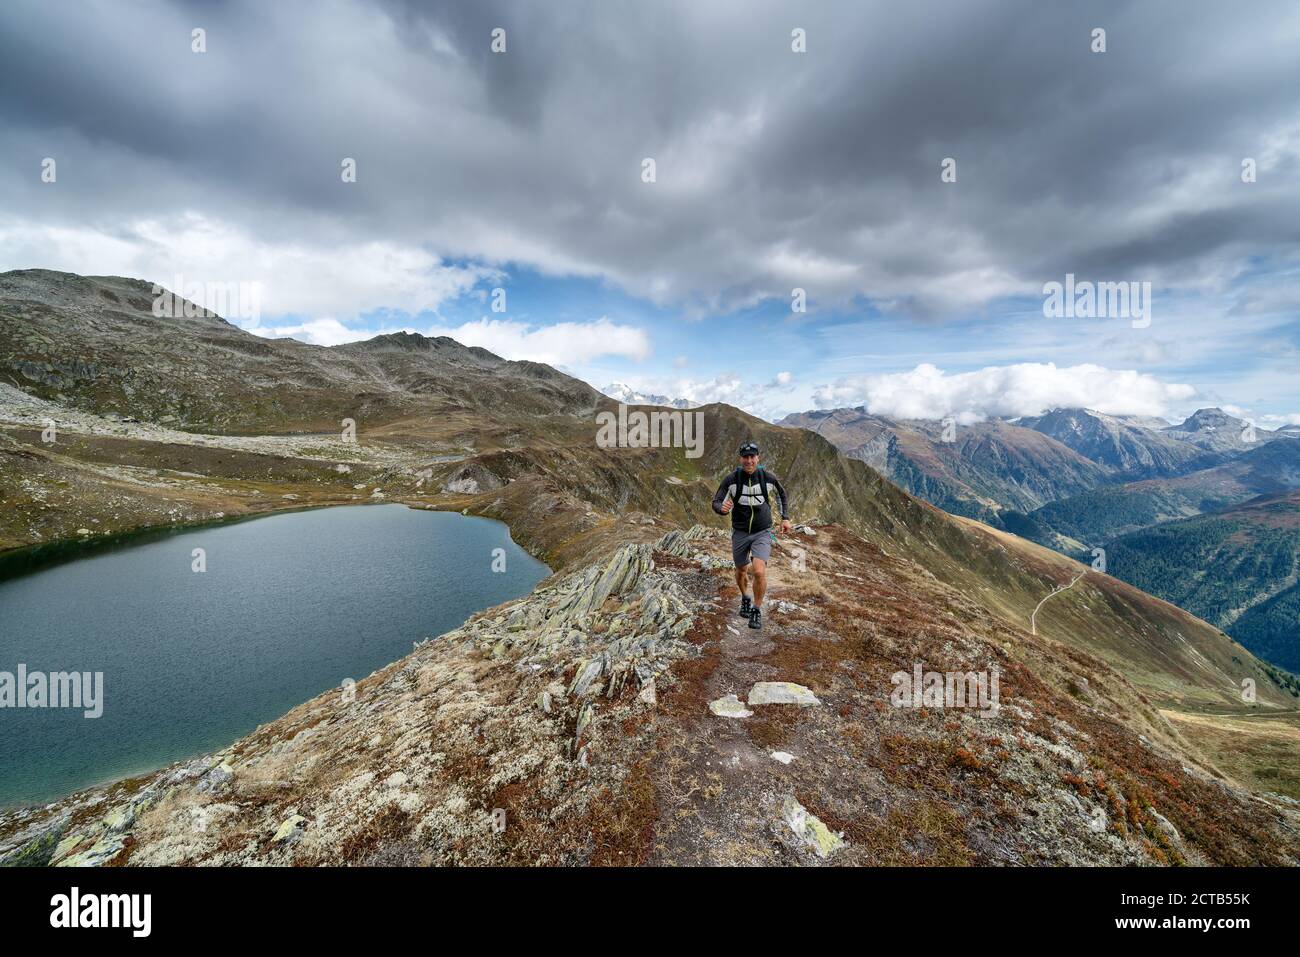 Trail running near Ulrichen, Obergoms, Alps, Switzerland Stock Photo